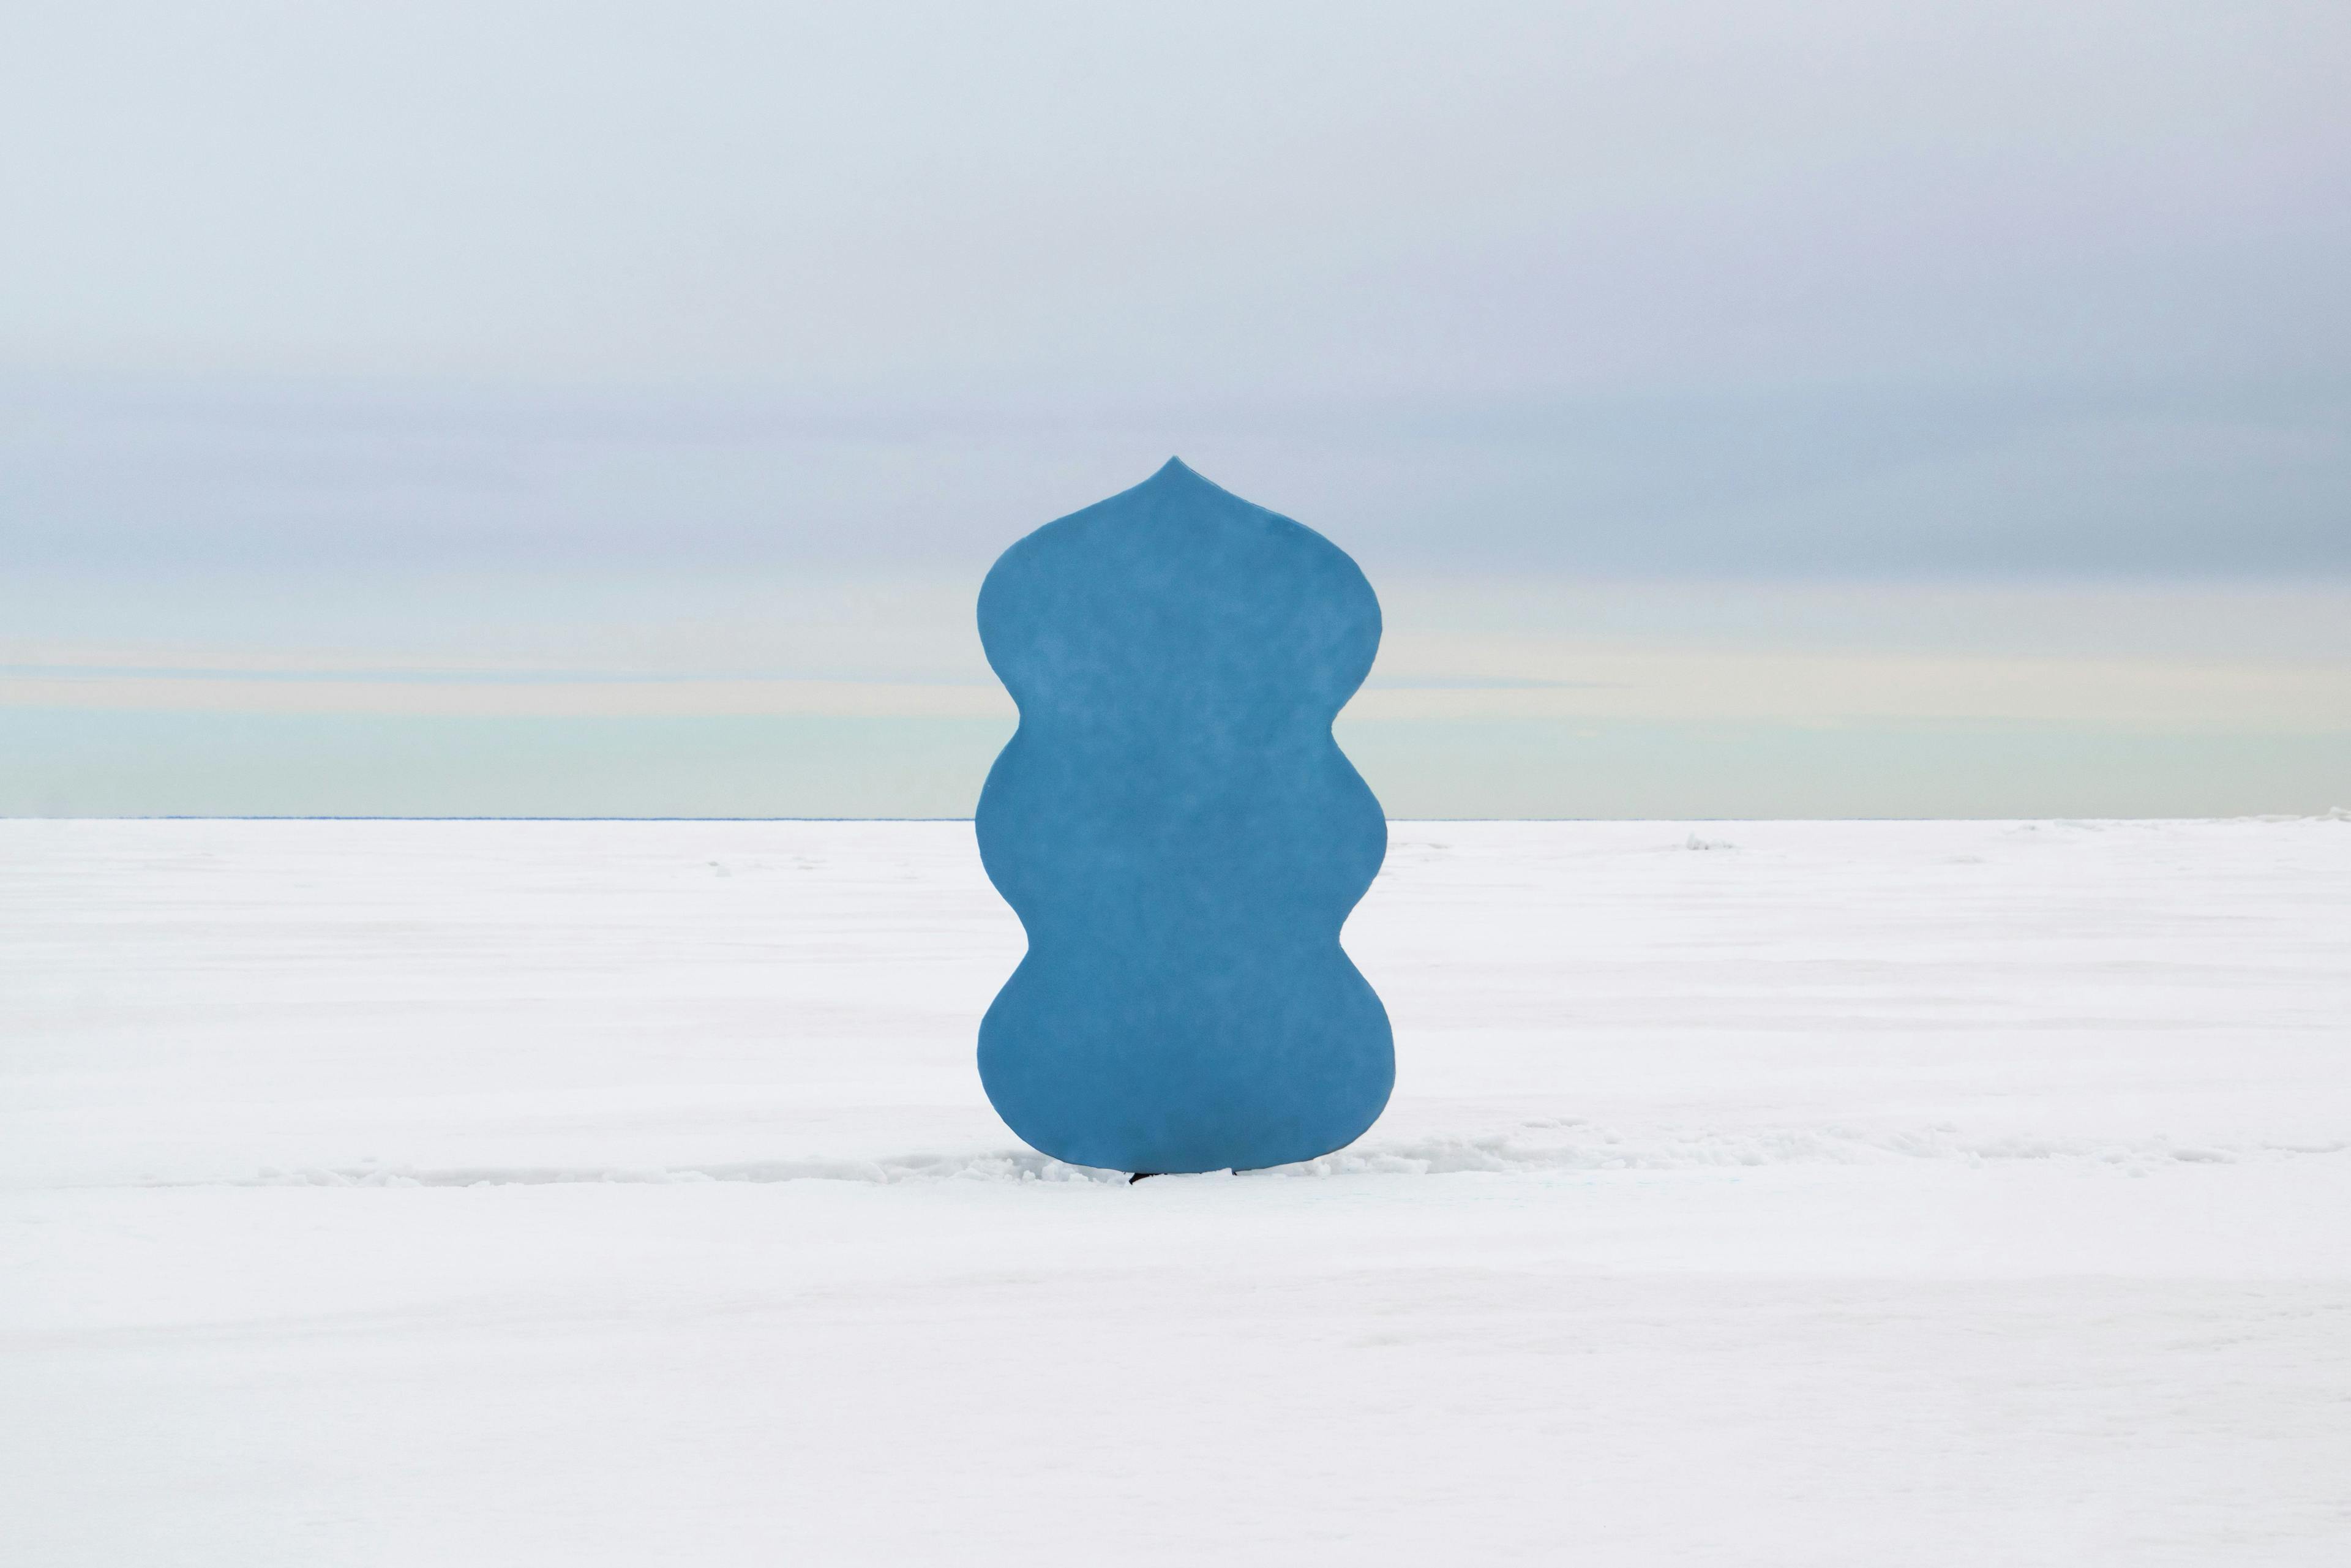 Blue sculpture on ice